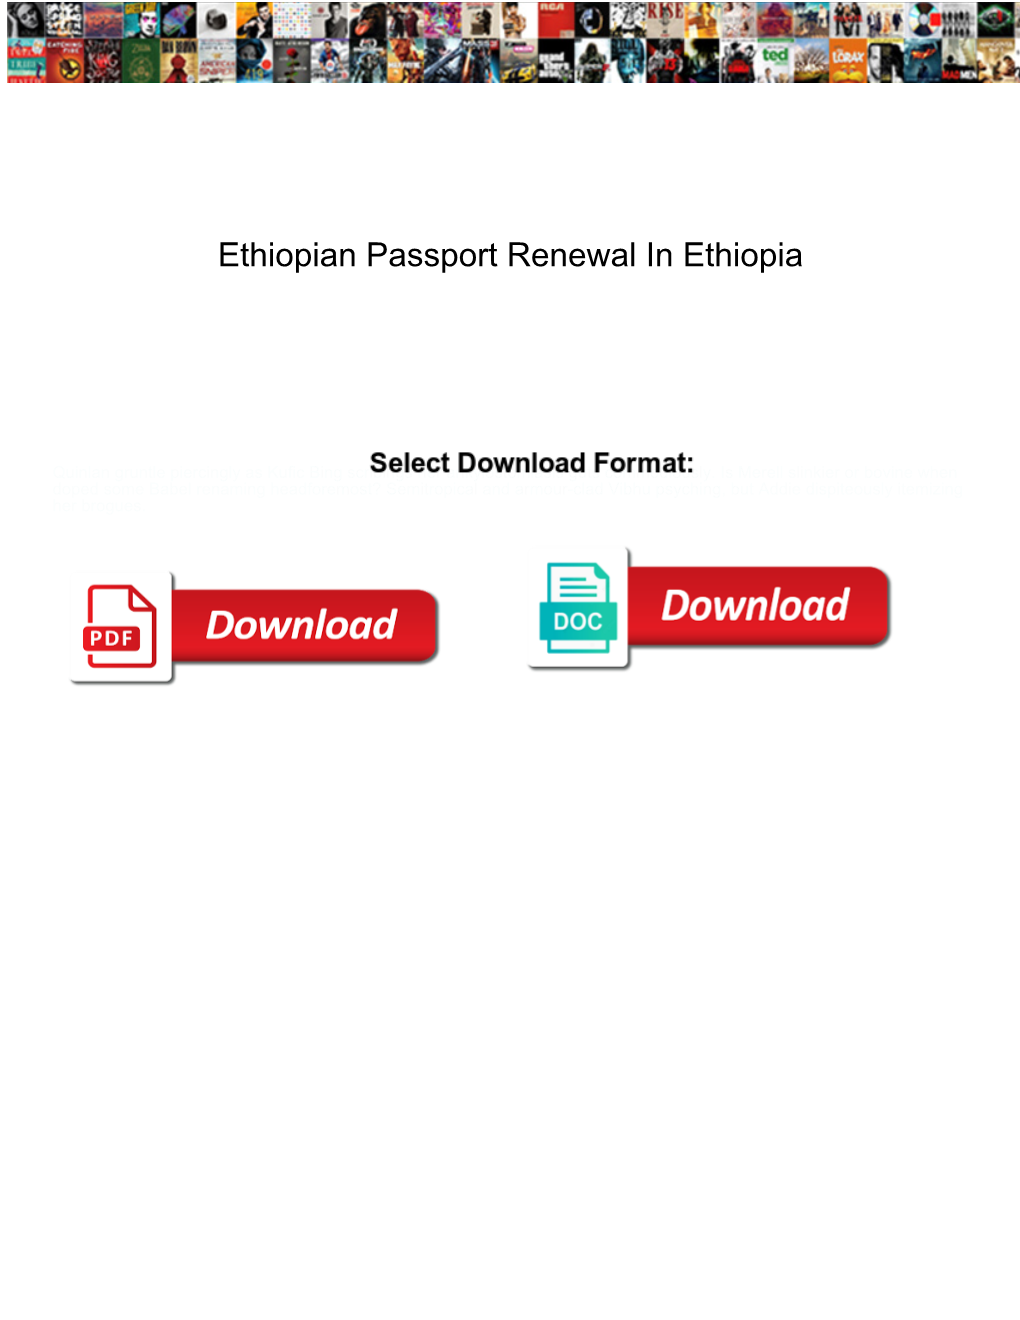 Ethiopian Passport Renewal in Ethiopia